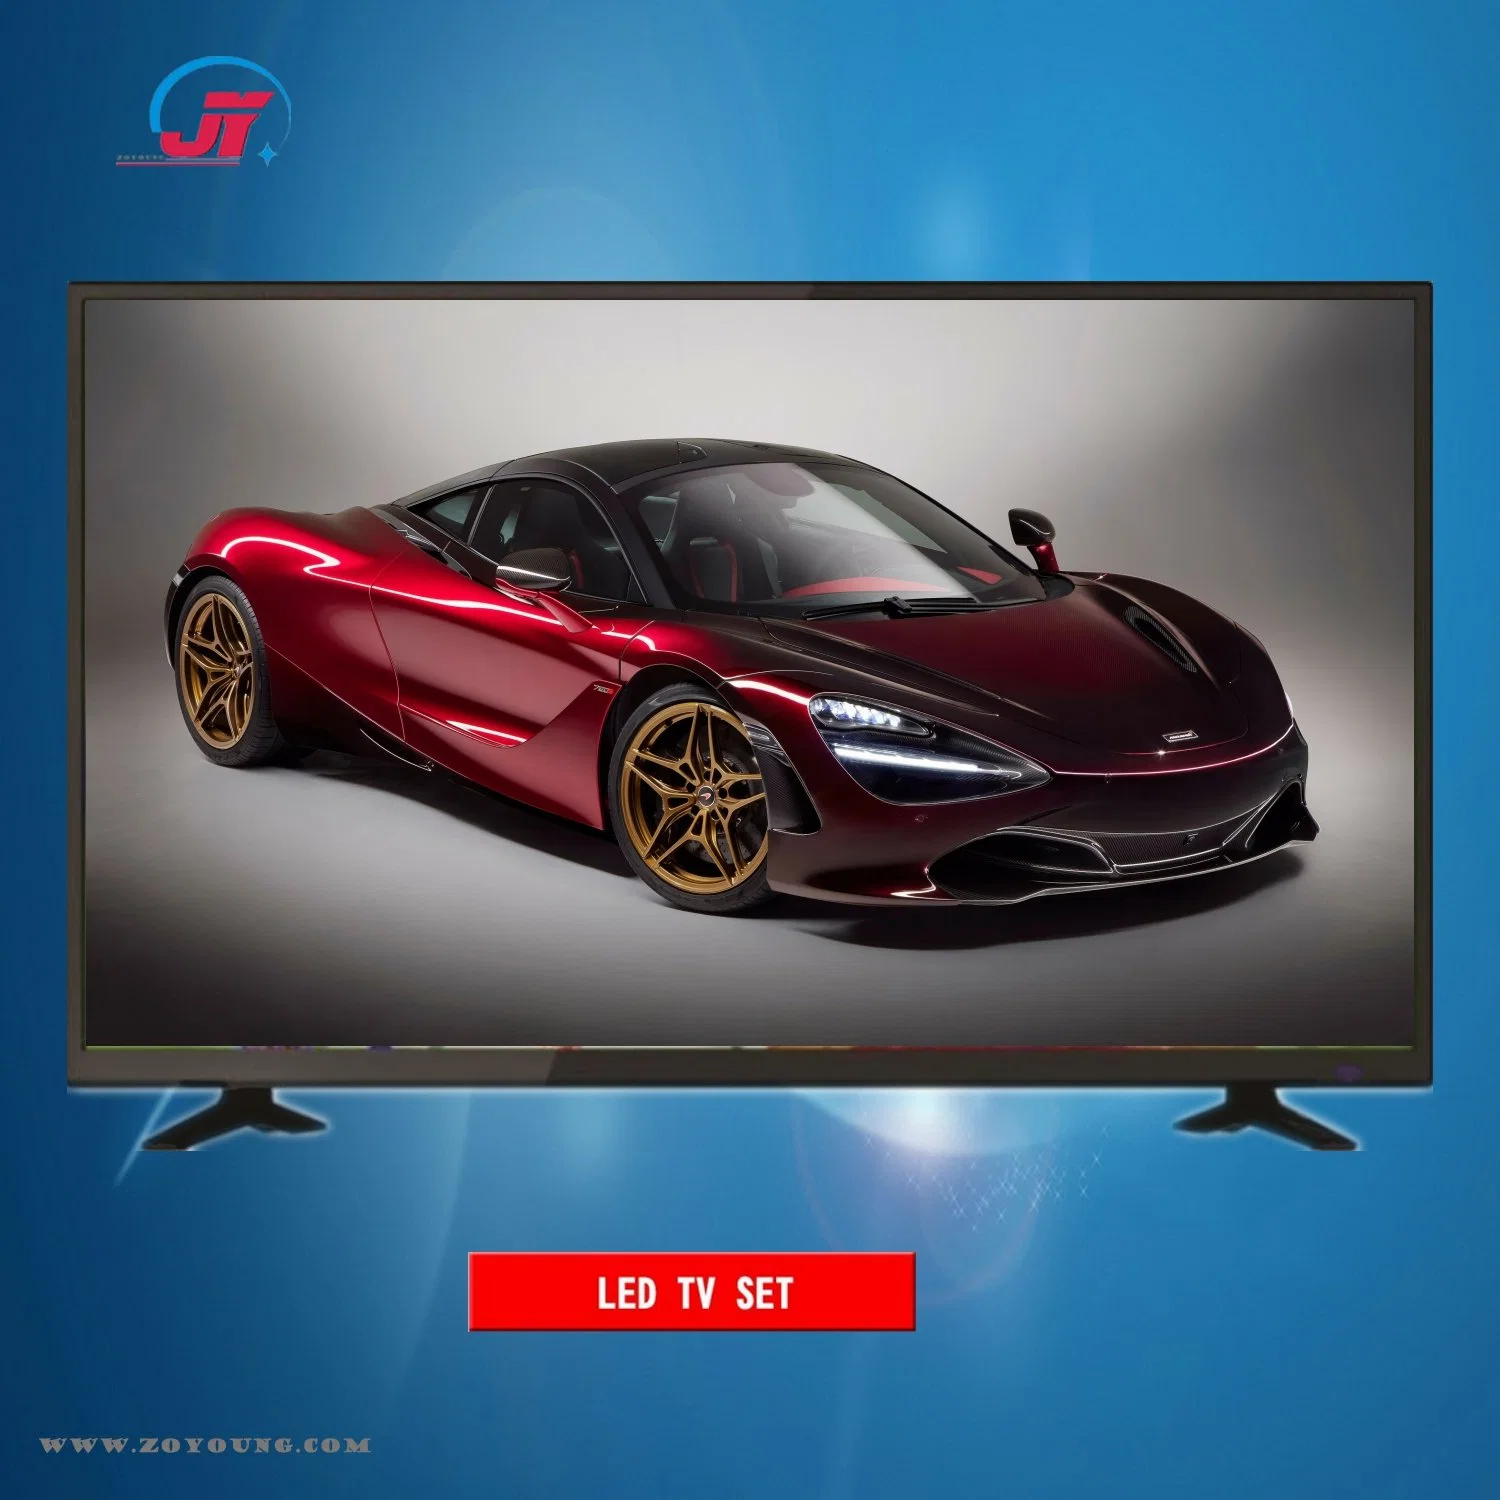 Monitor de pantalla de inicio de OEM 43pulgadas FHD Android DVB-T2/S2 Digital LED TV Smart TV a color